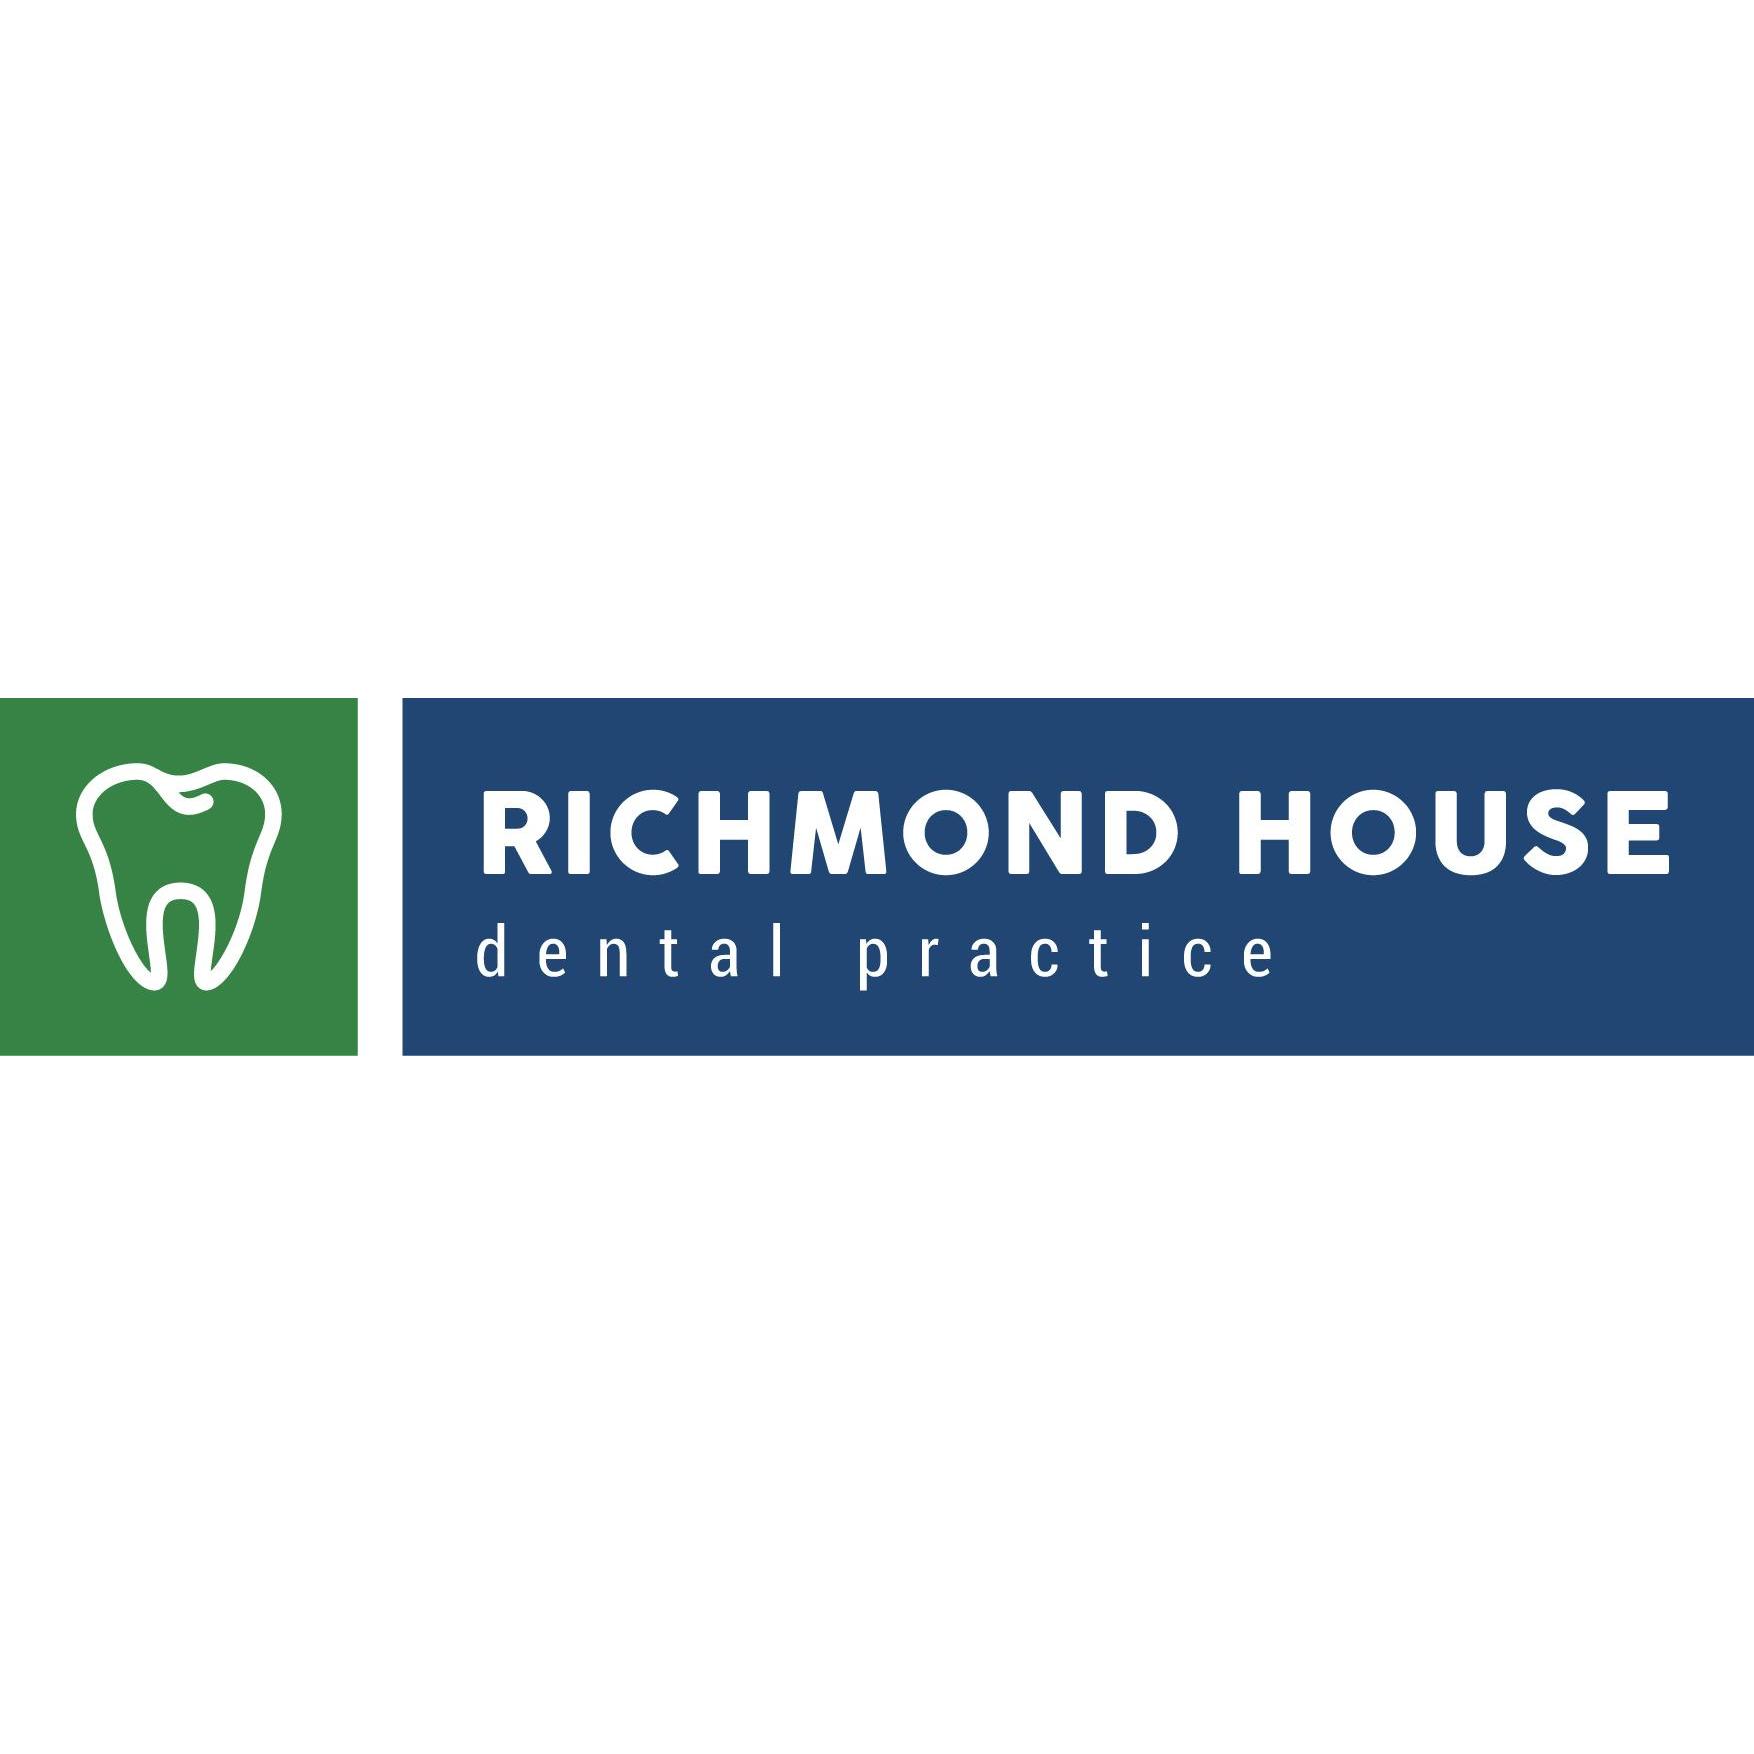 Richmond House Dental Practice - Stourbridge, West Midlands DY8 4BU - 01384 390111 | ShowMeLocal.com